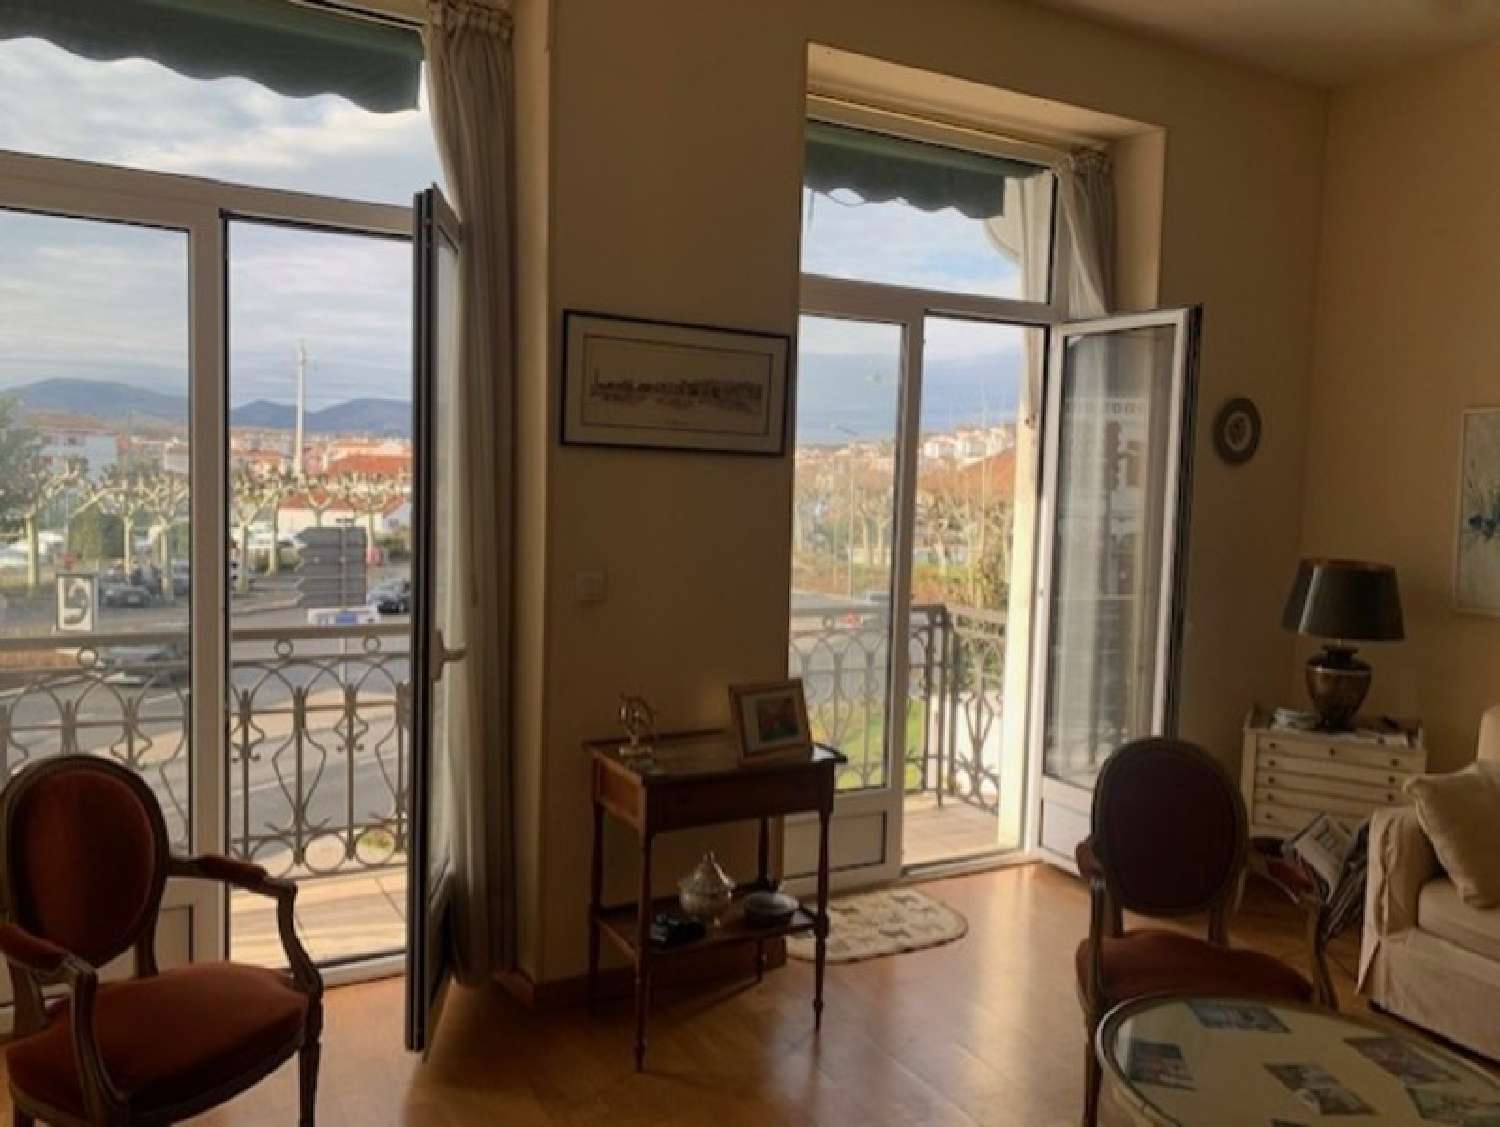  à vendre appartement Saint-Jean-de-Luz Pyrénées-Atlantiques 1